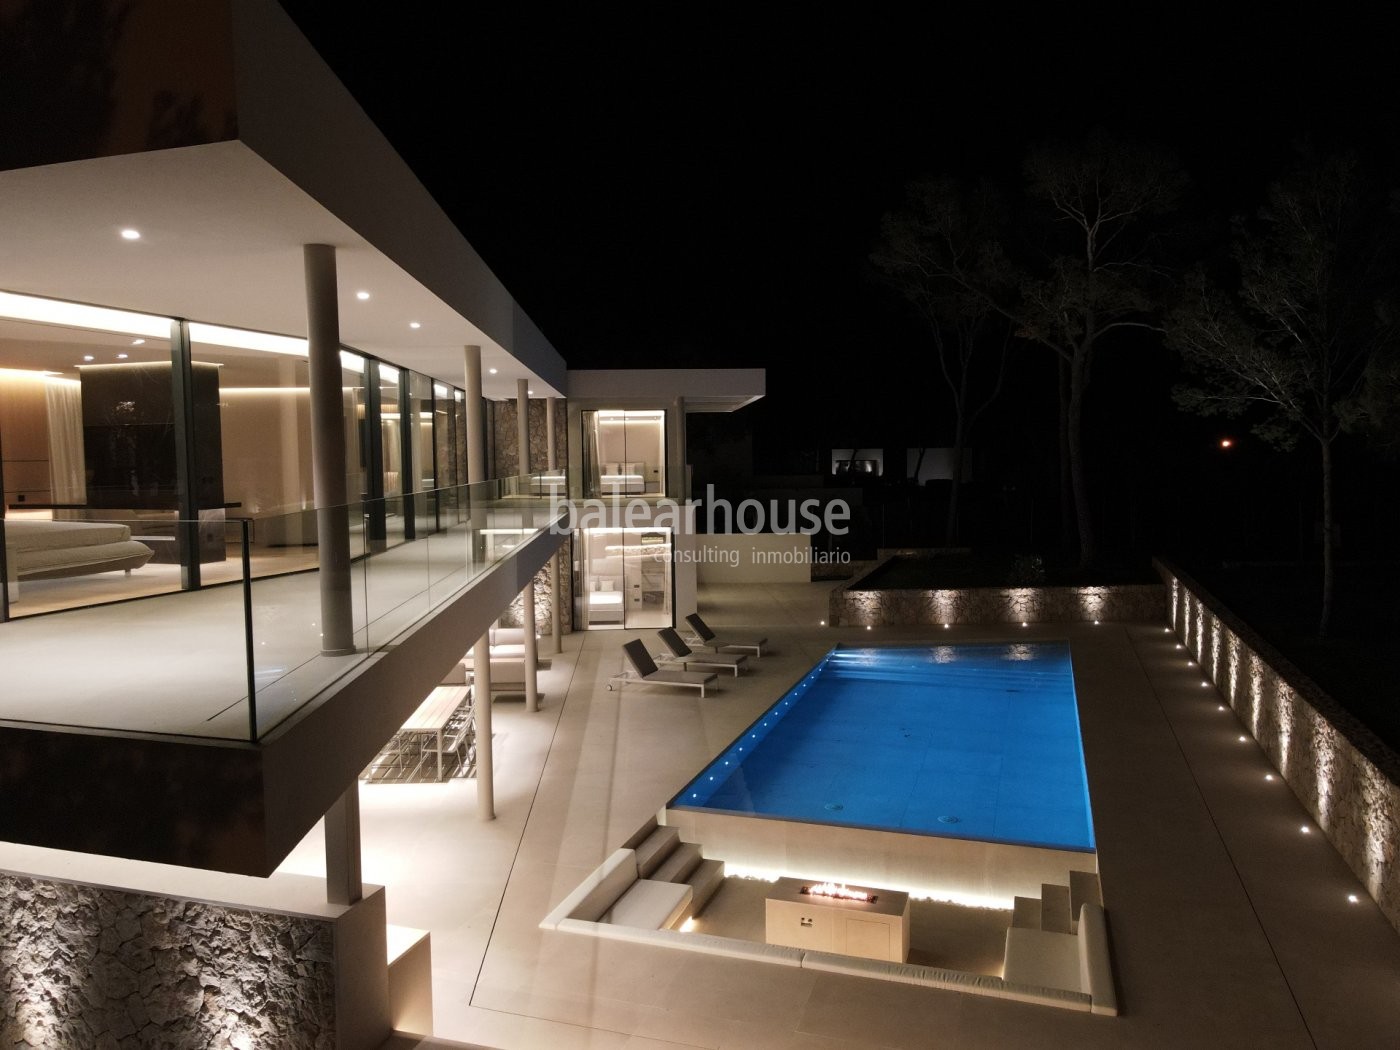 Gran villa de obra nueva con un contemporáneo diseño en el bello entorno de Nova Santa Ponsa.